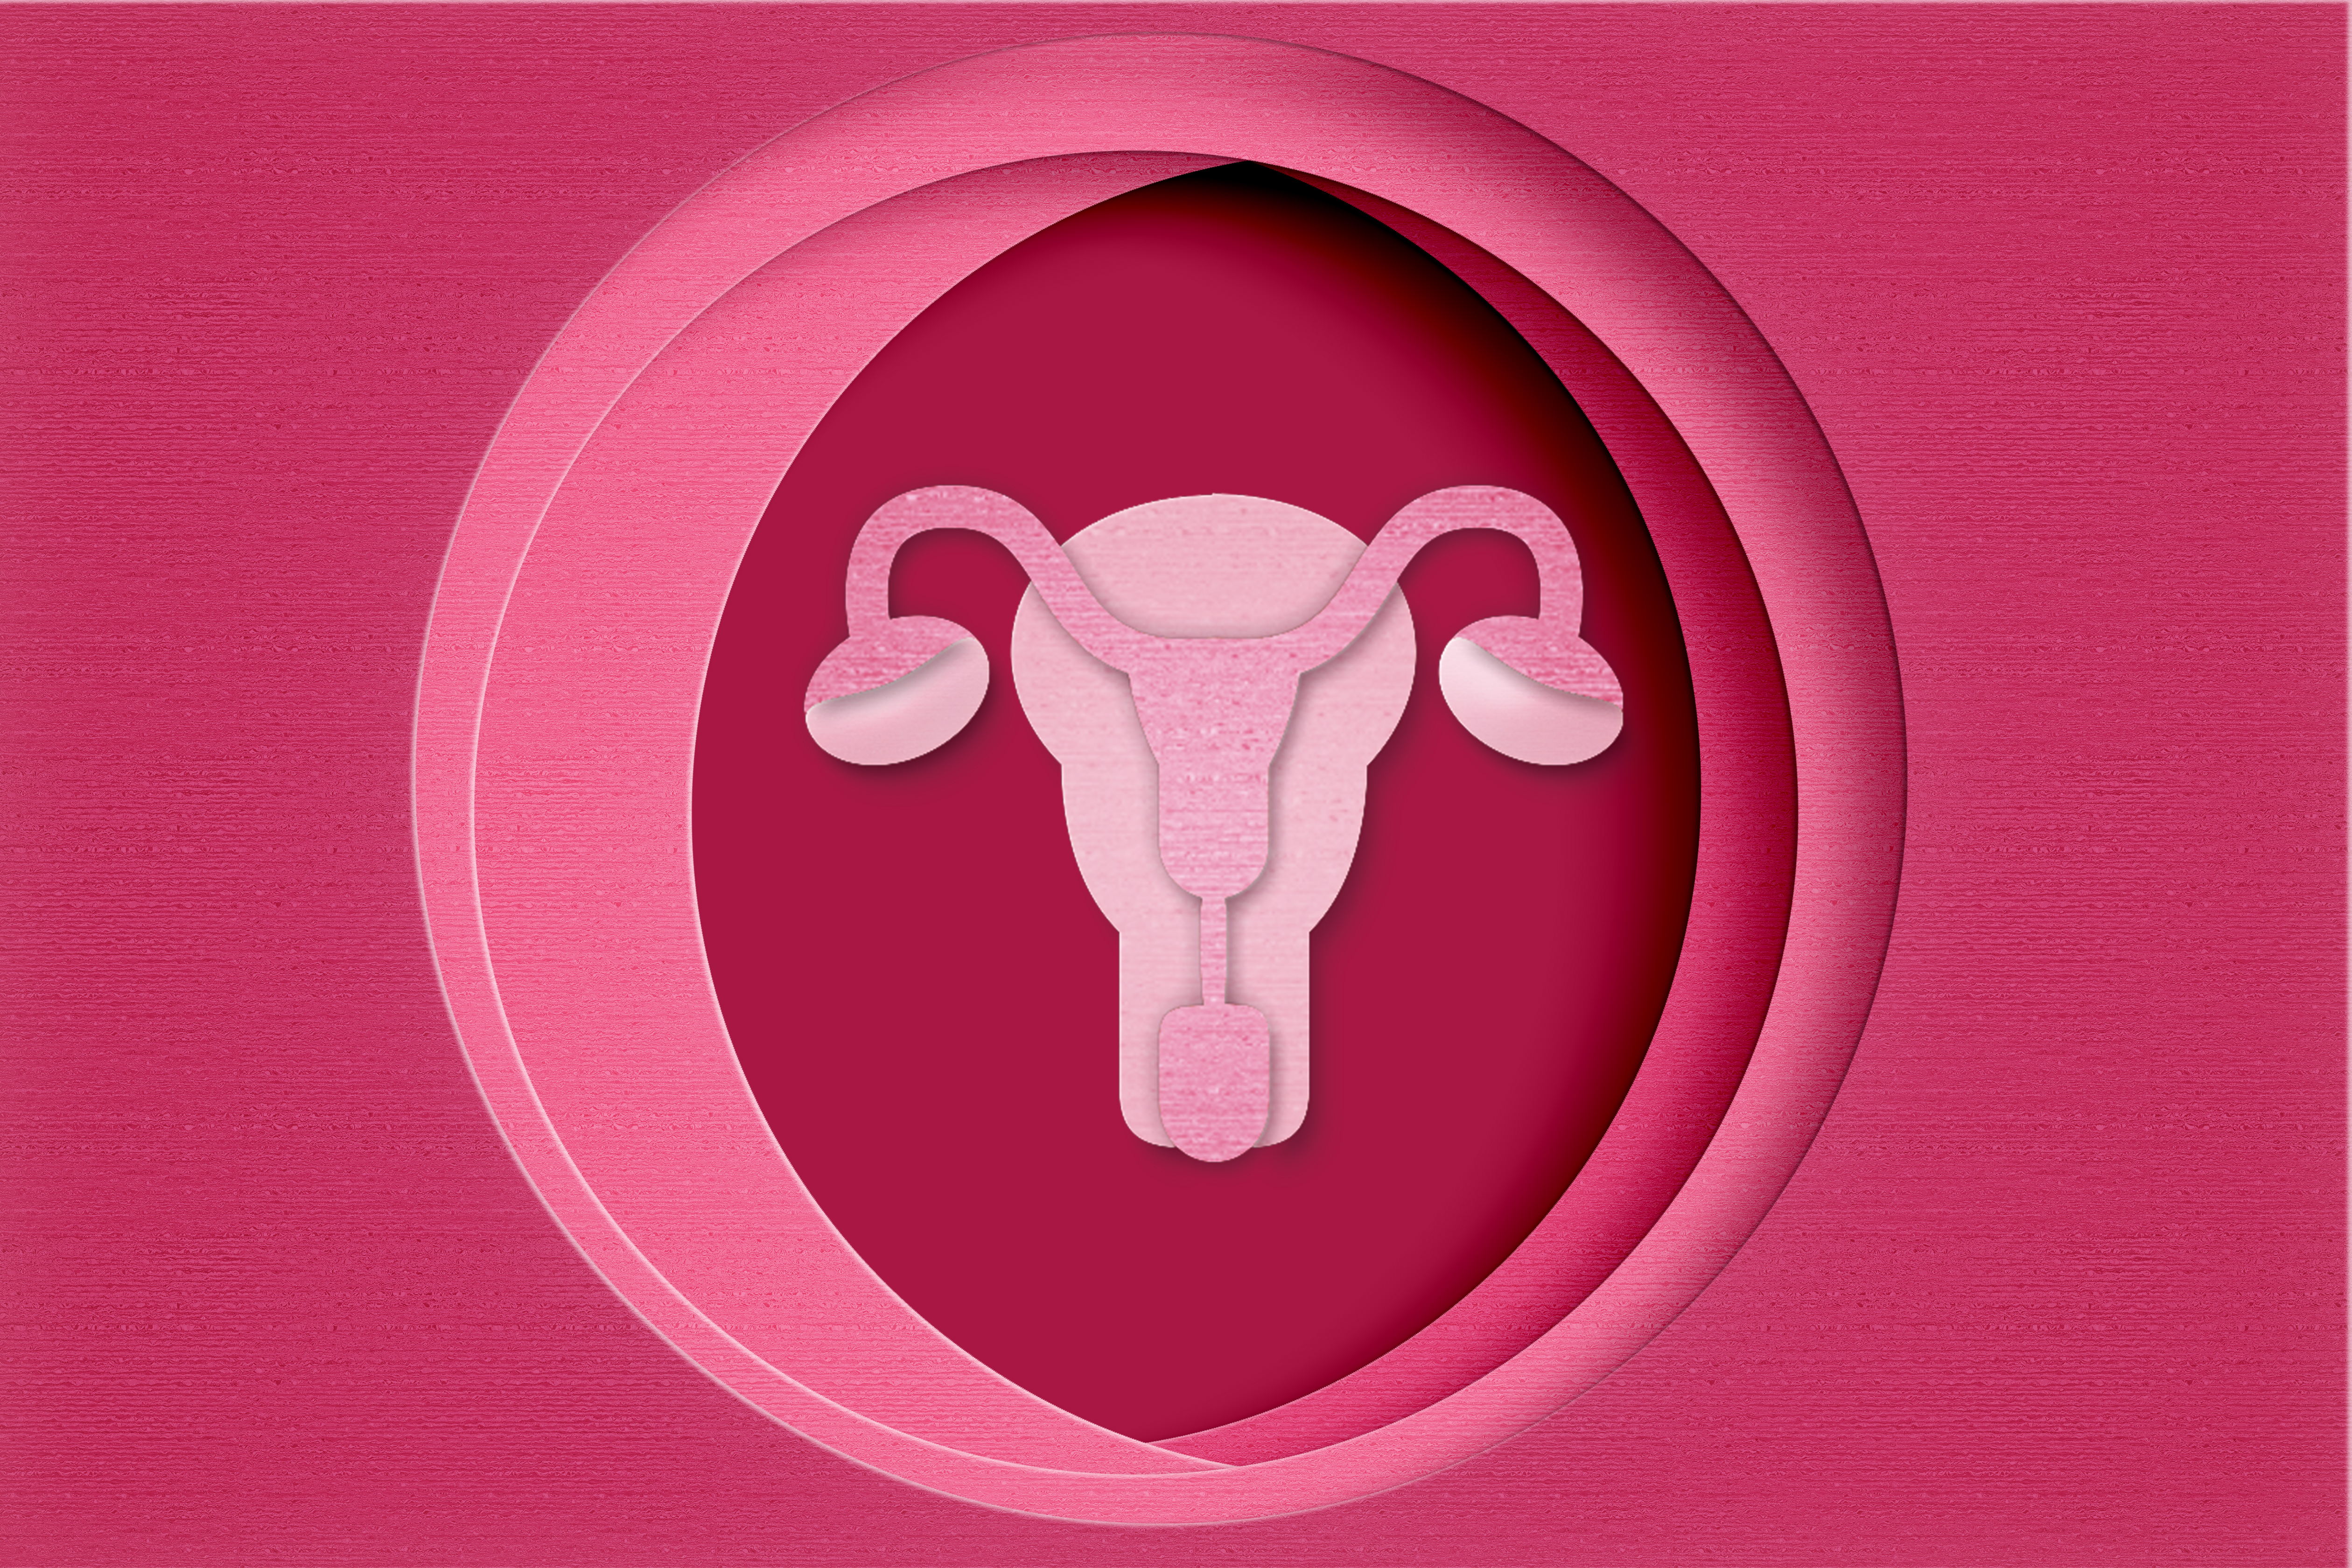 Laqueadura: Tudo sobre esse método contraceptivo permanente